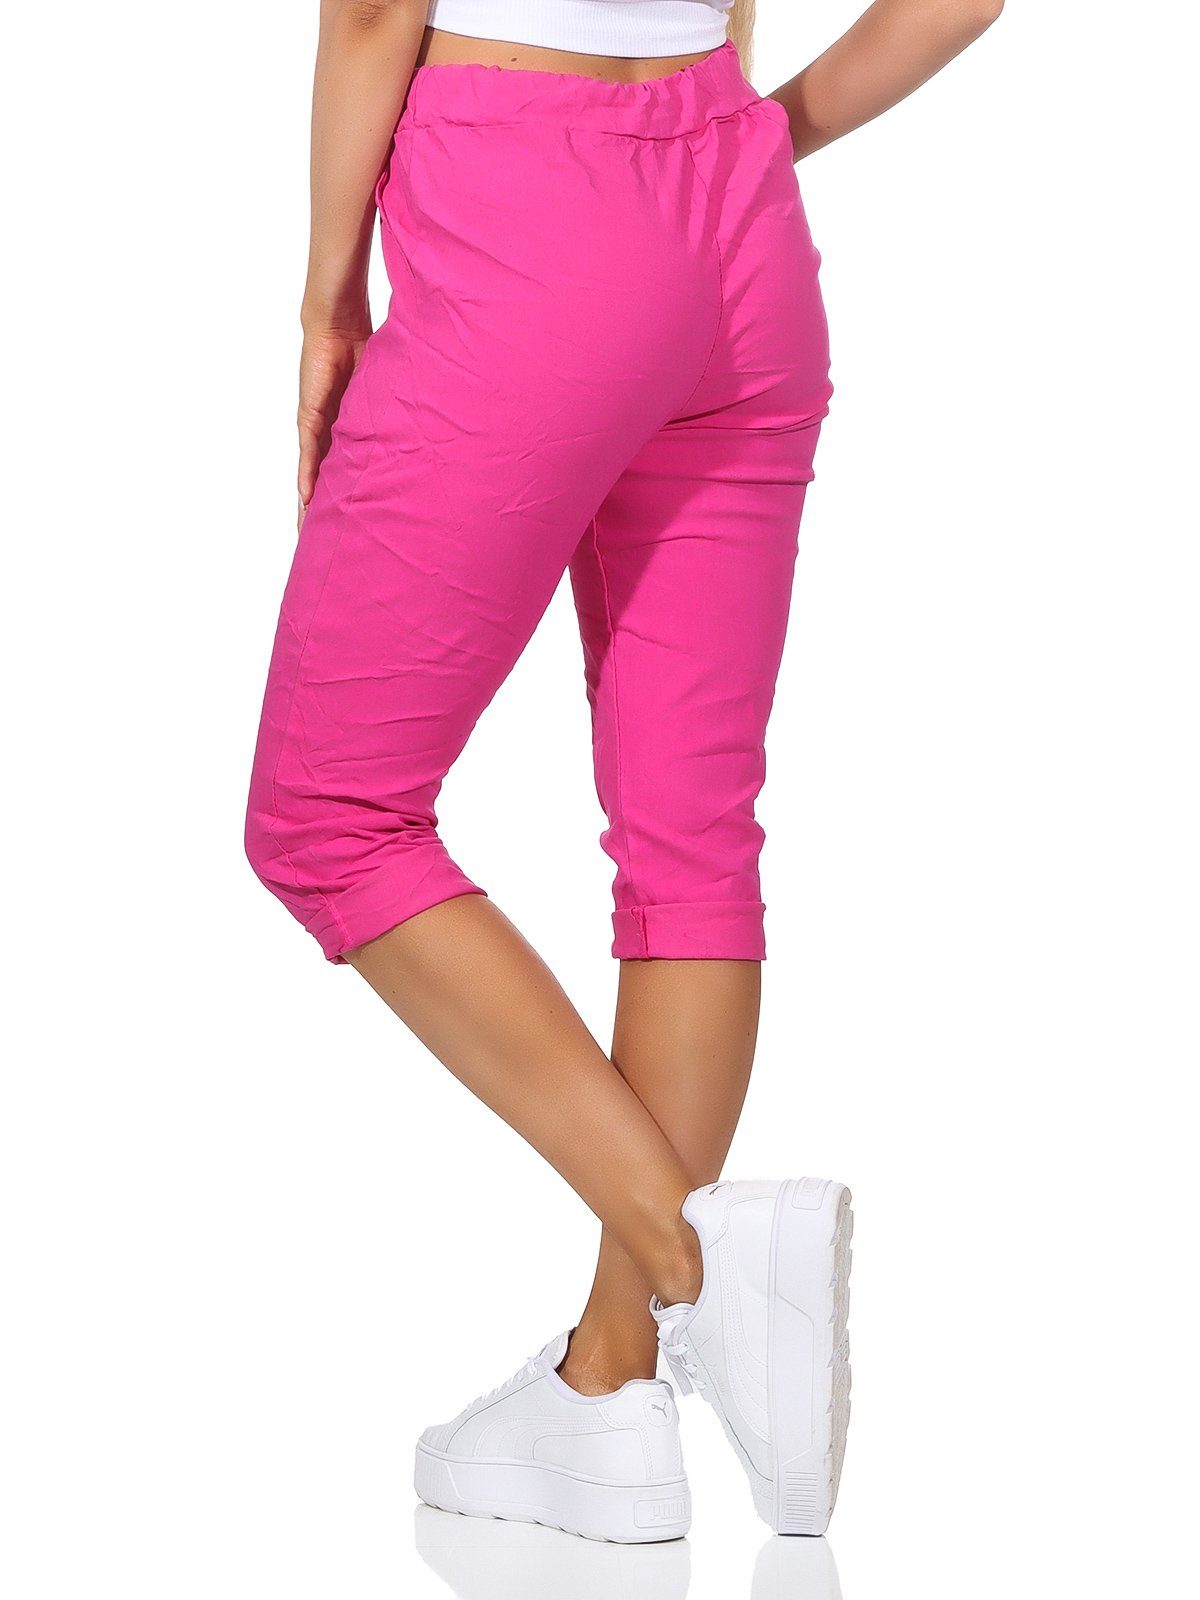 Aurela Damenmode 7/8-Hose sommerlichen Jeans 36-44 und Farben, Kurze Bermuda Taschen Damen Capri in Kordelzug, Pink Hose Sommerhose